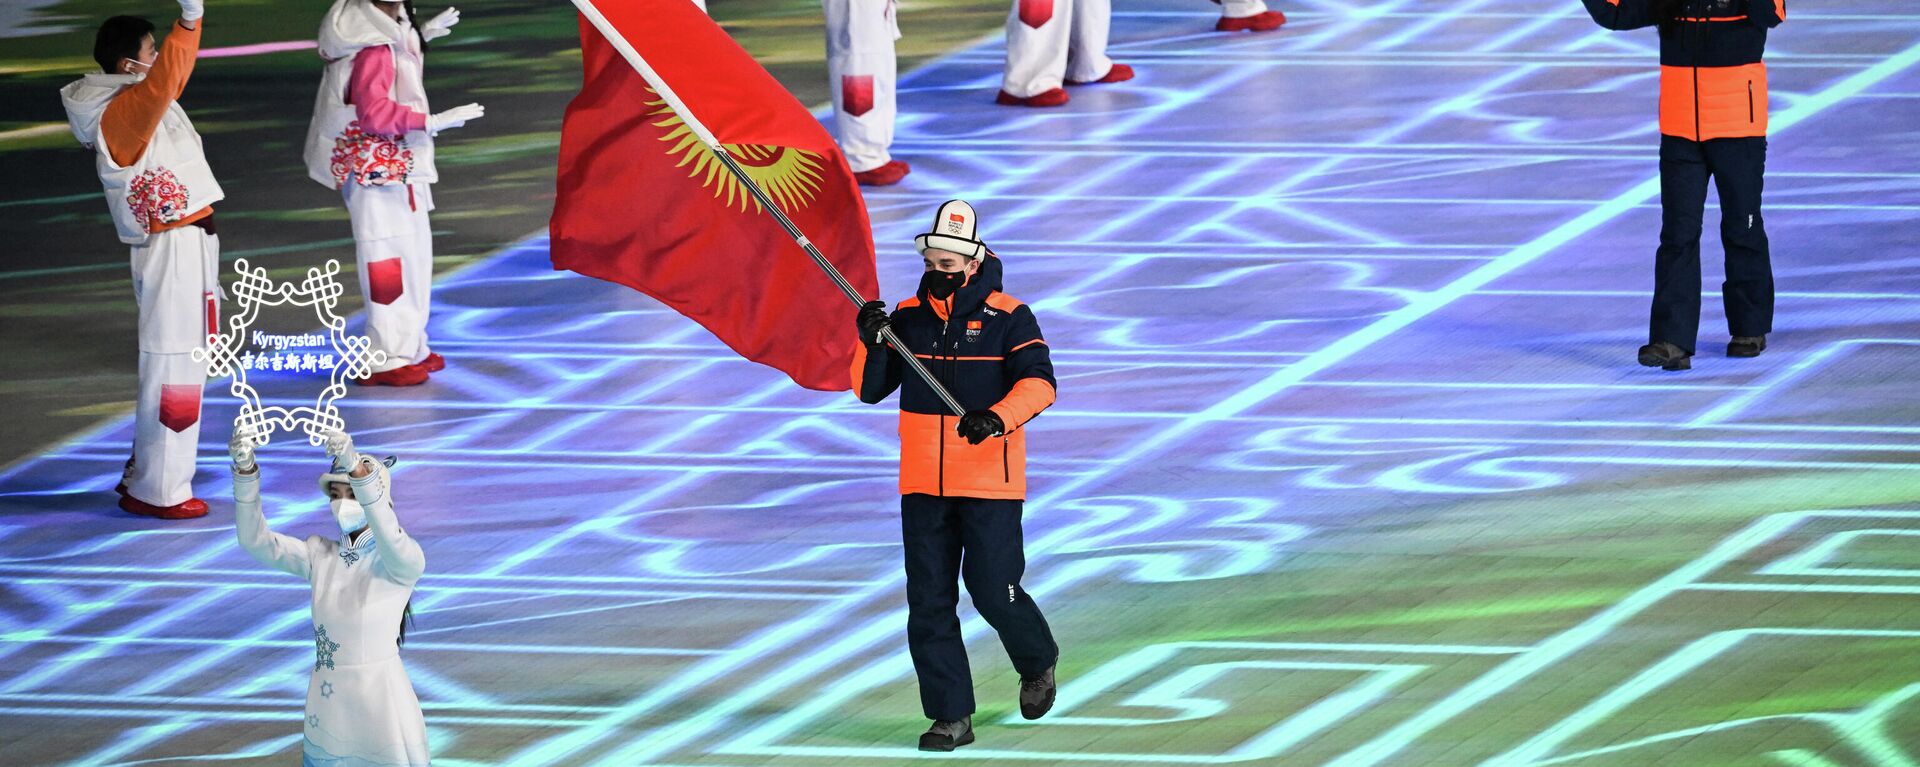 Кыргызстанский горнолыжник Максим Гордеев во время церемонии открытия зимних Олимпийских игр 2022 года в Пекине. 4 февраля 2022 года - Sputnik Кыргызстан, 1920, 04.02.2022